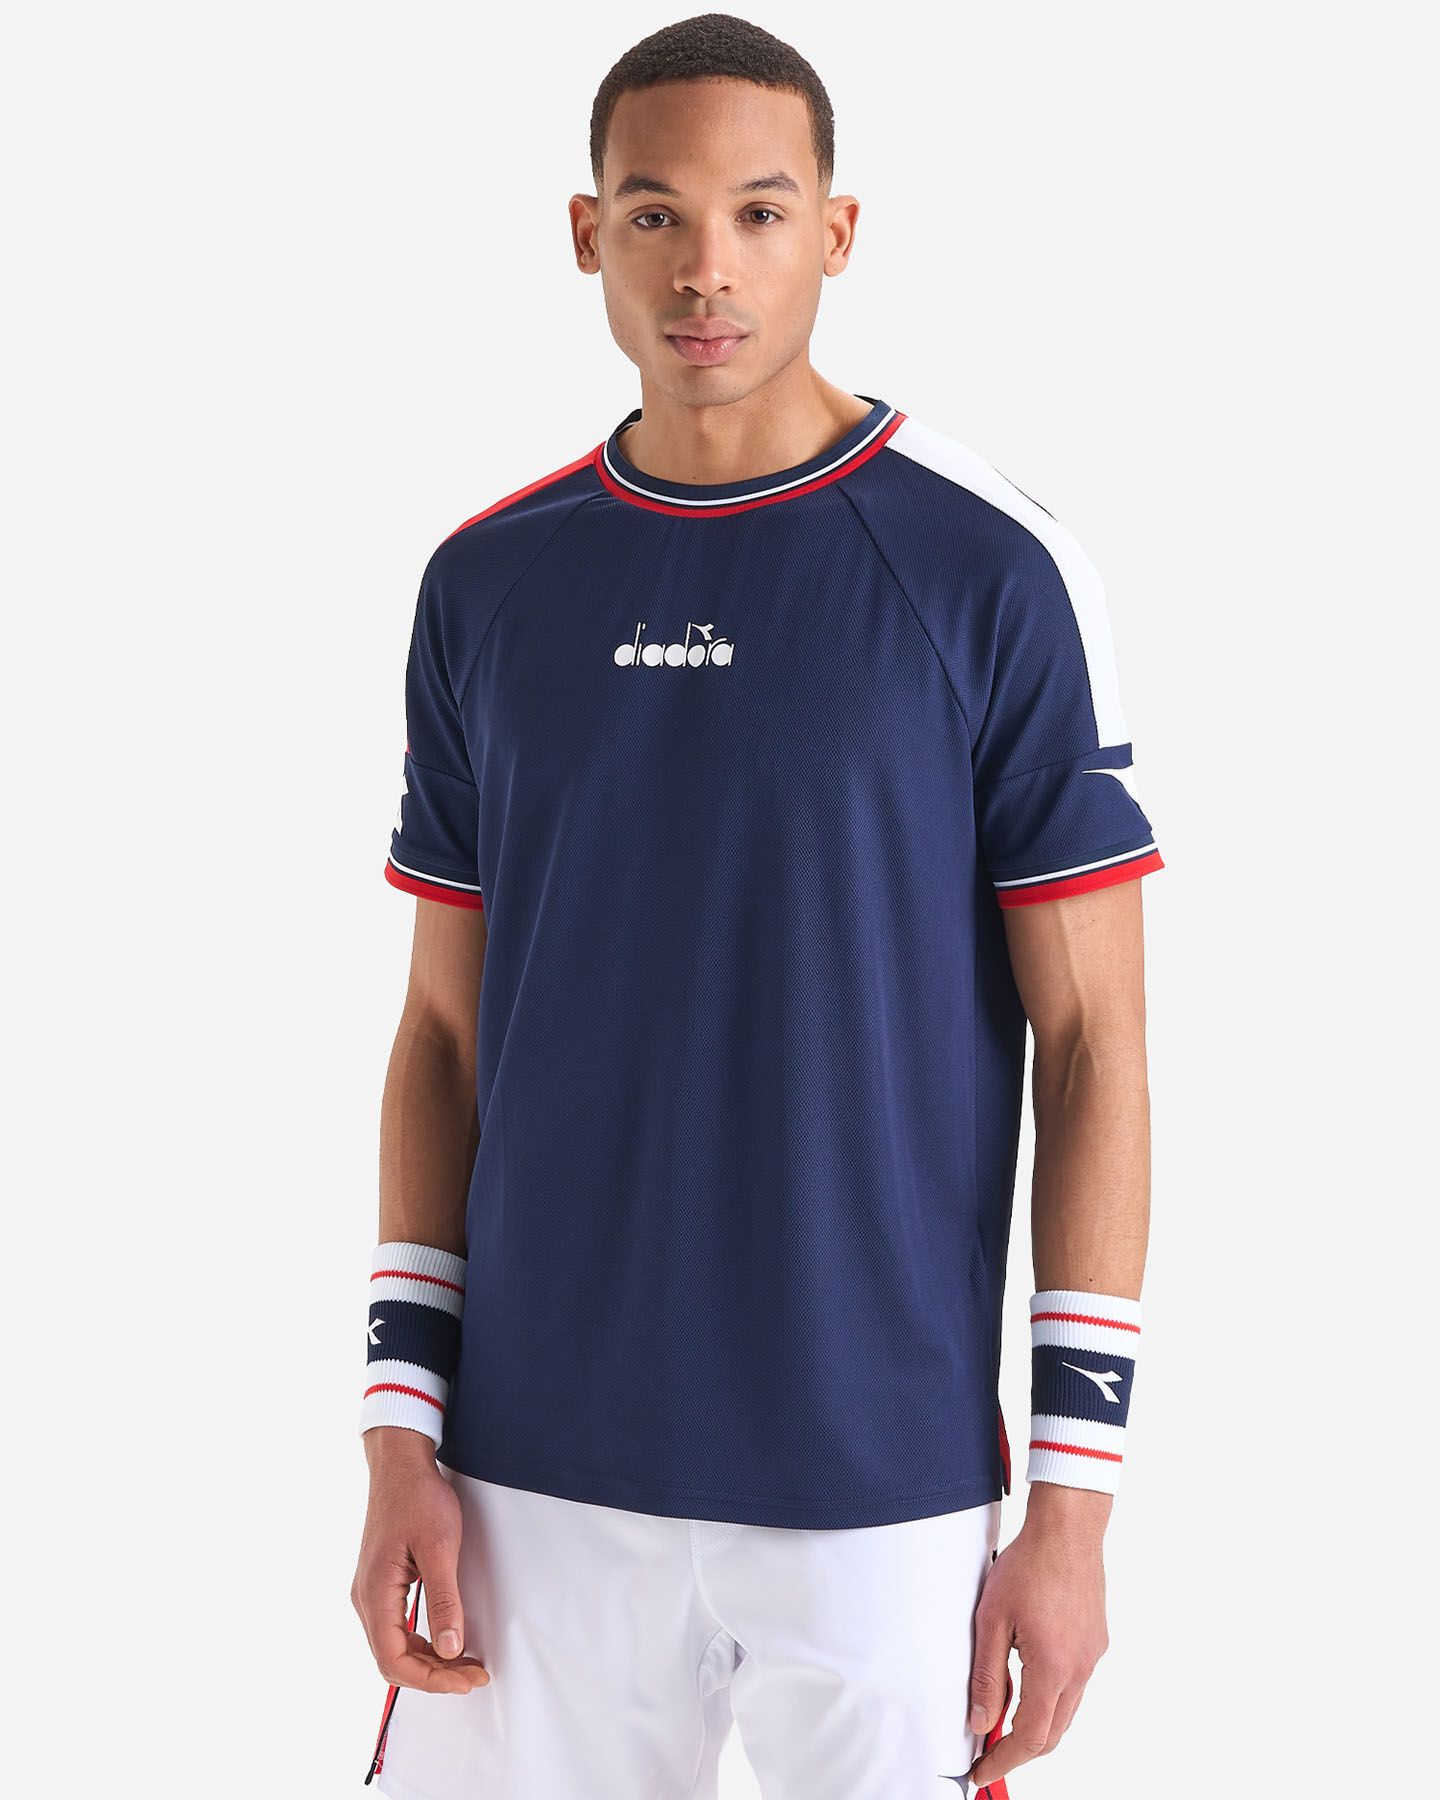  T-Shirt tennis DIADORA ICON M S5529667|60063|L scatto 1